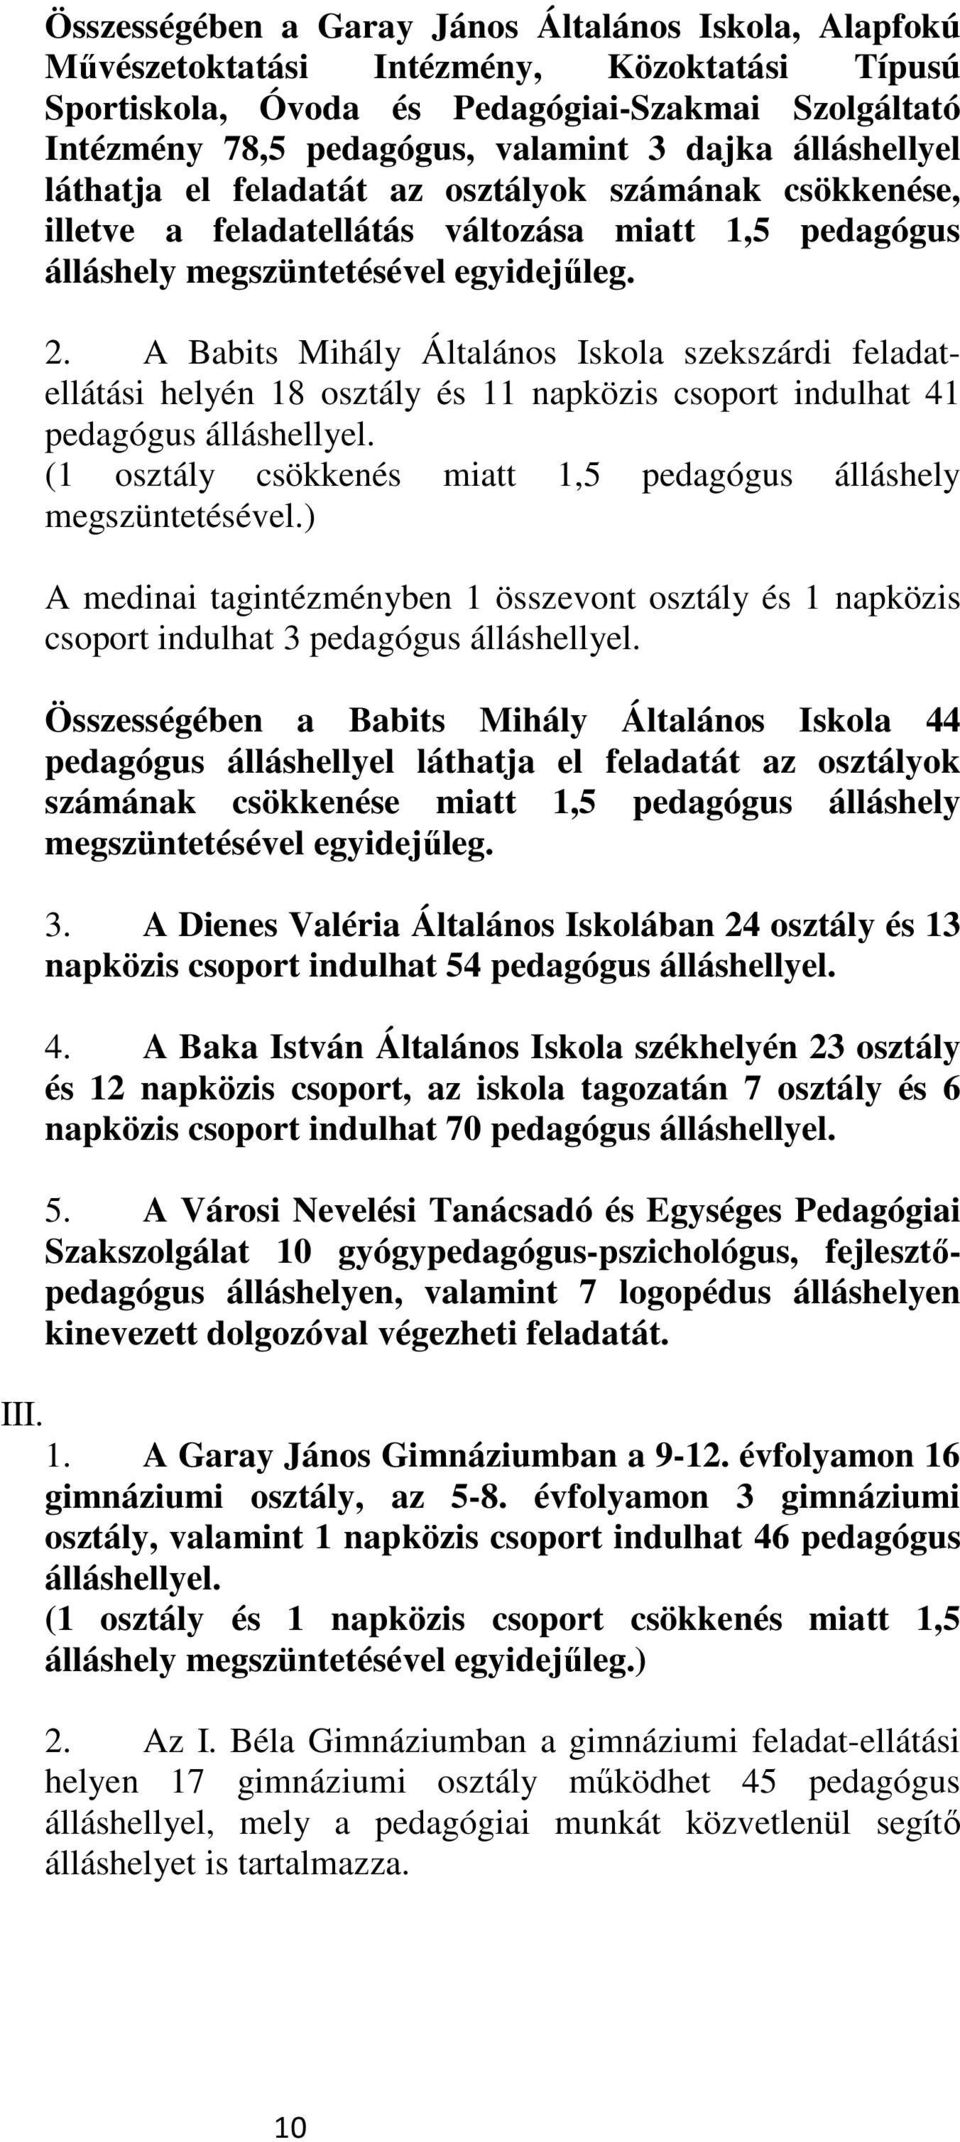 A Babits Mihály Általános Iskola szekszárdi feladatellátási helyén 18 osztály és 11 napközis csoport indulhat 41 pedagógus álláshellyel.